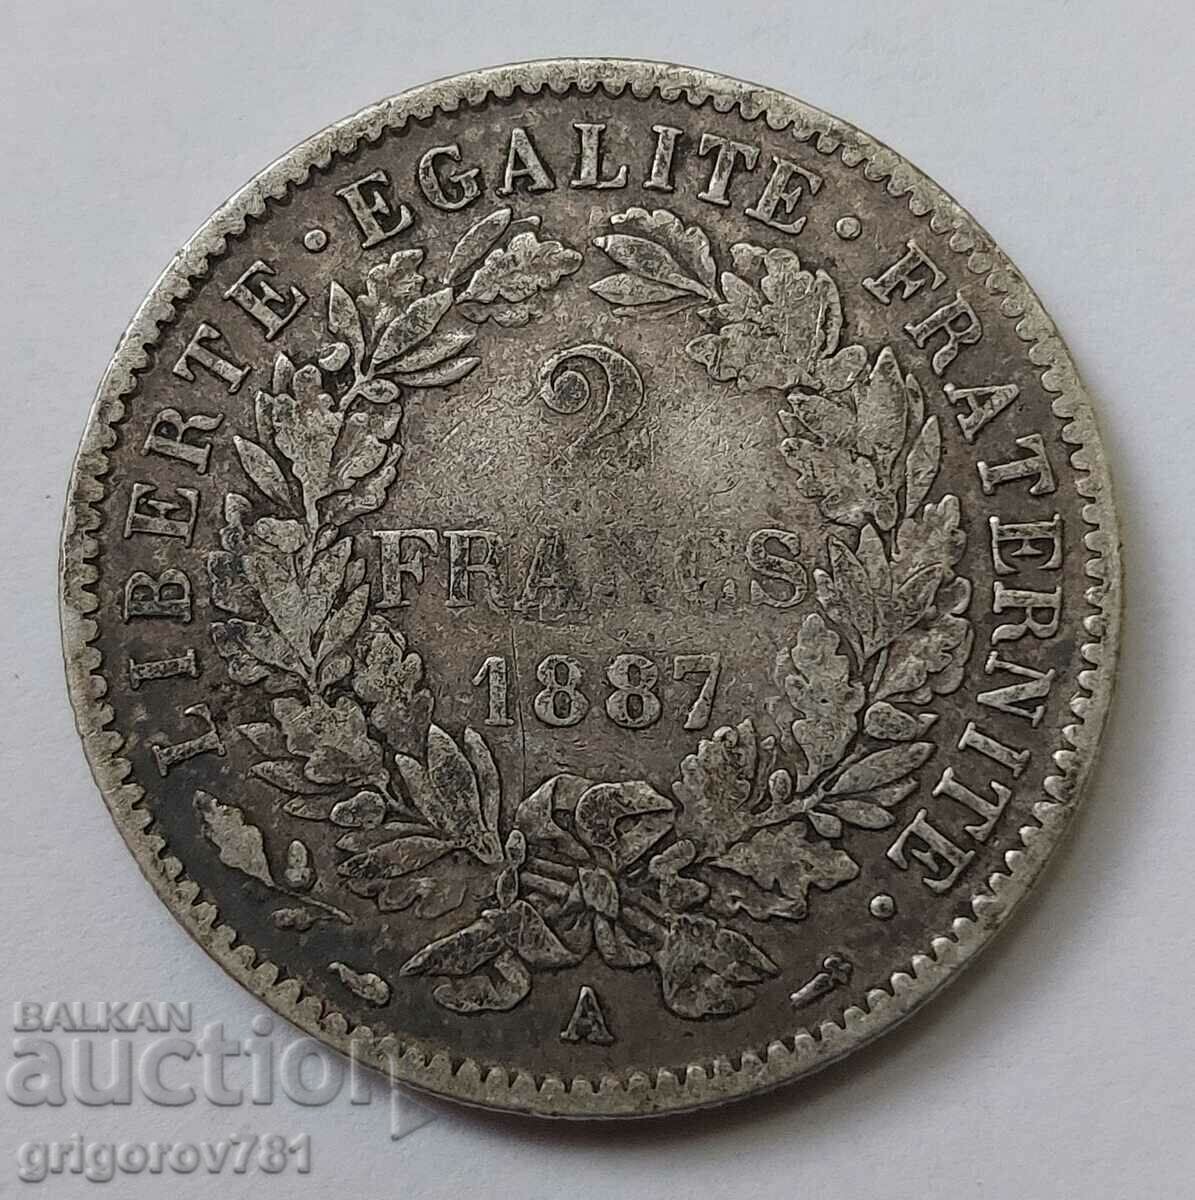 2 Franci Argint Franta 1887 A - Moneda de argint #154